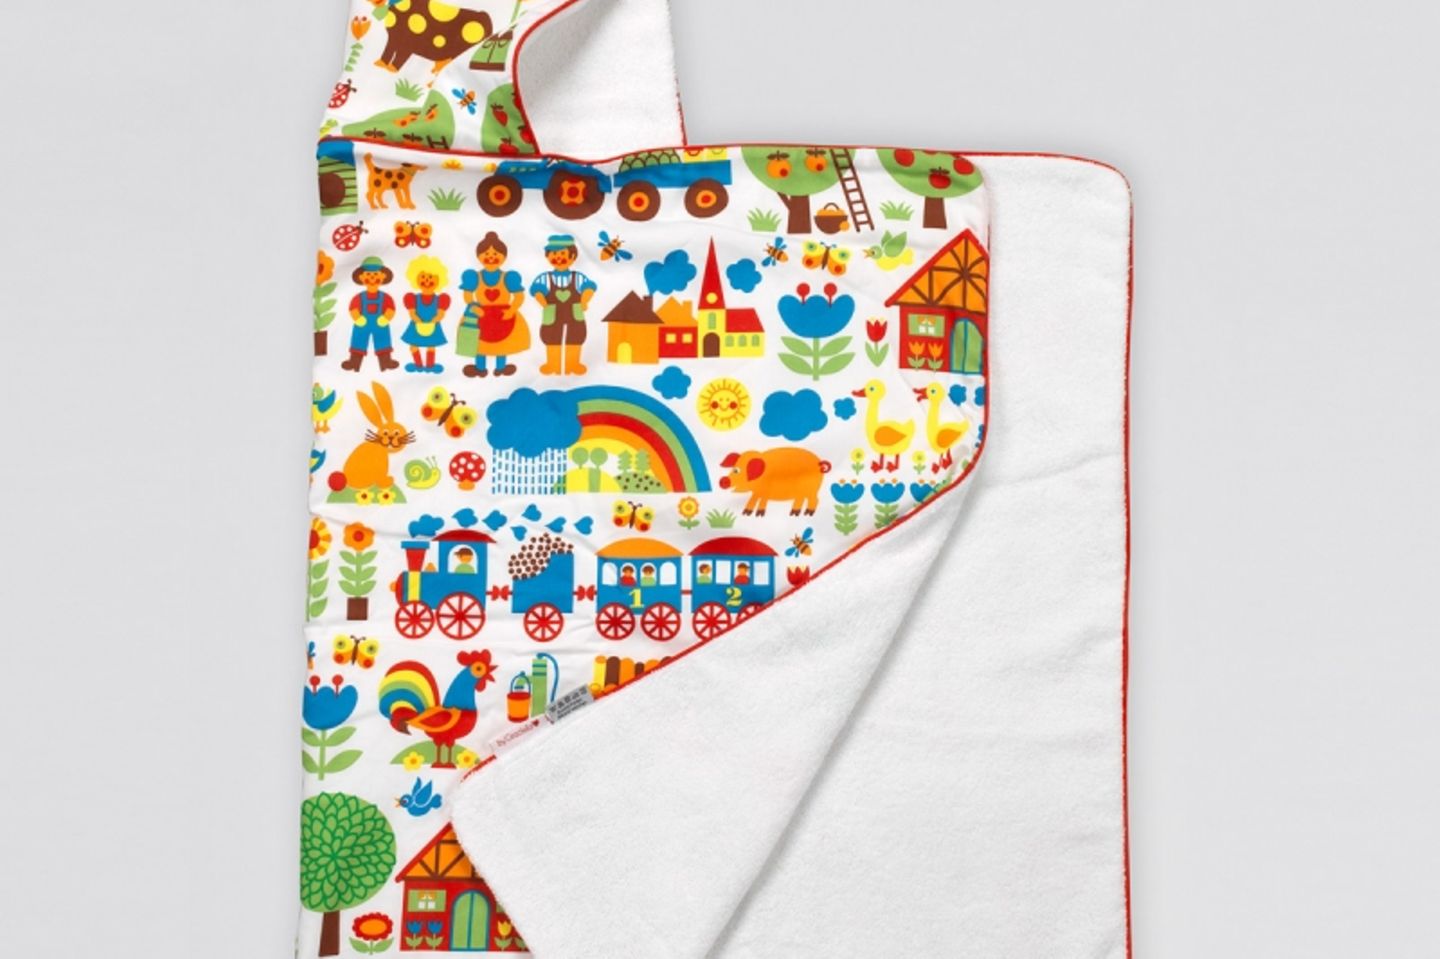 Bunt geht immer! Mit süßen, kindgerechten Motiven strahlt dieses kuschelige Handtuch Freude und gute Laune aus! Gibt's unter www.bygraziela.com für 34,90 Euro.